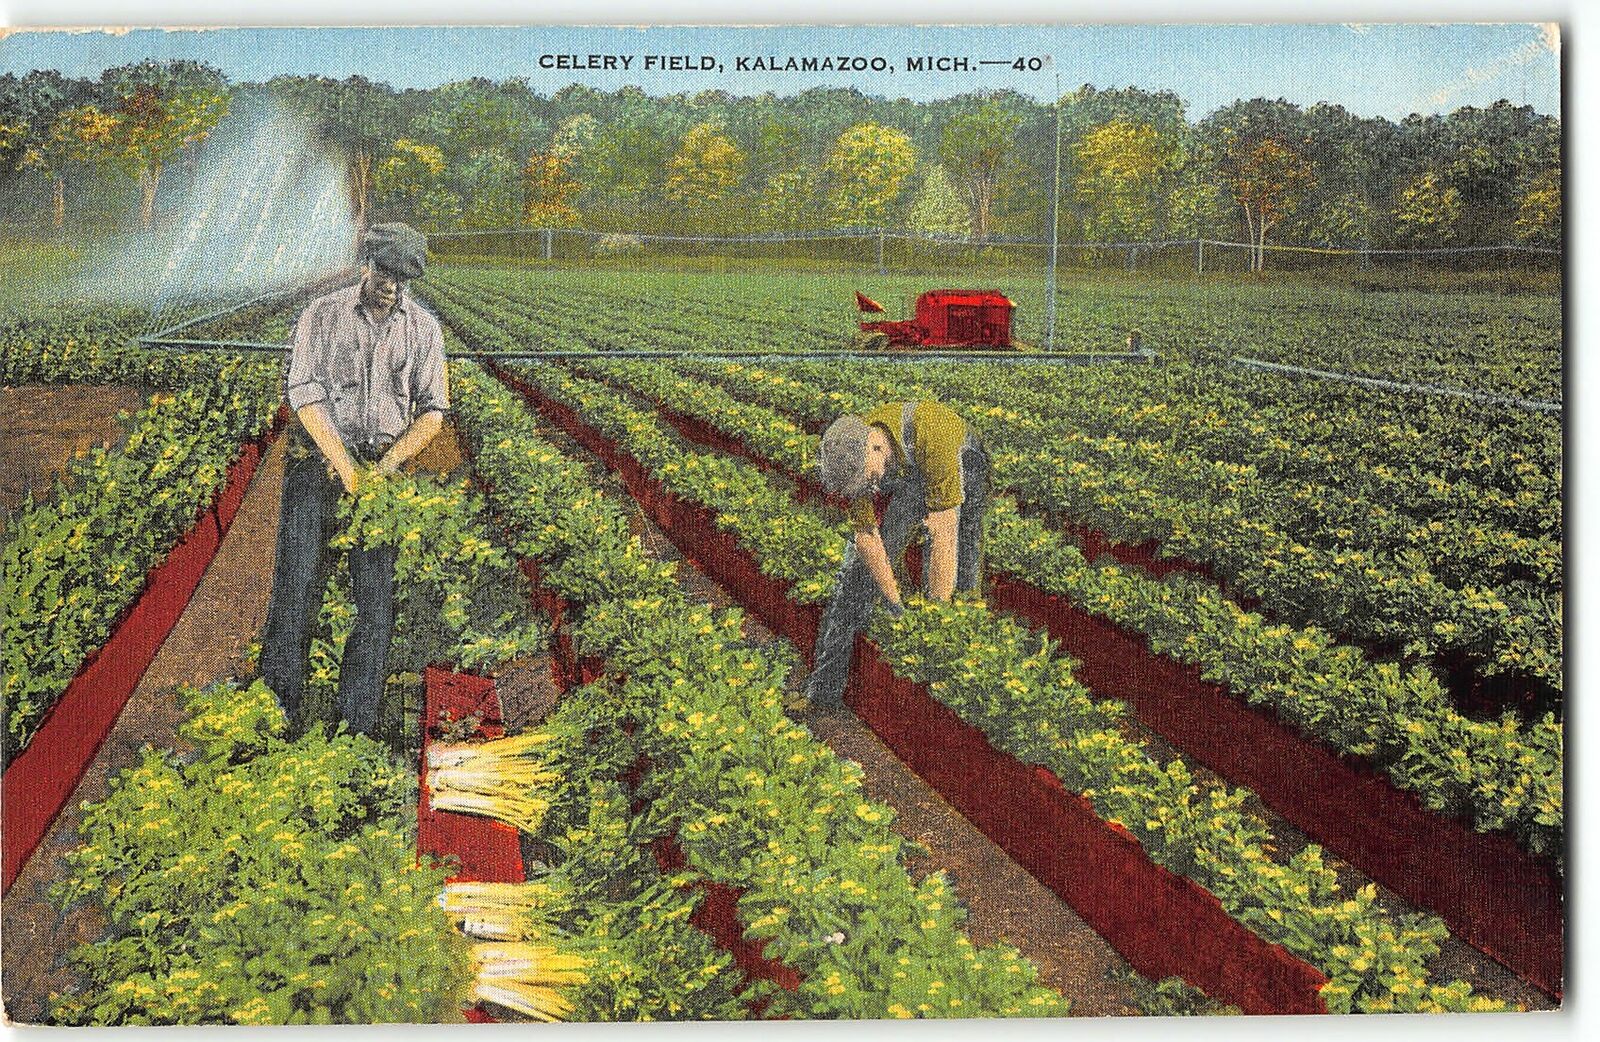 Kalamazoo, Michigan - Farmers working in Celery Field - 1940s Linen Postcard